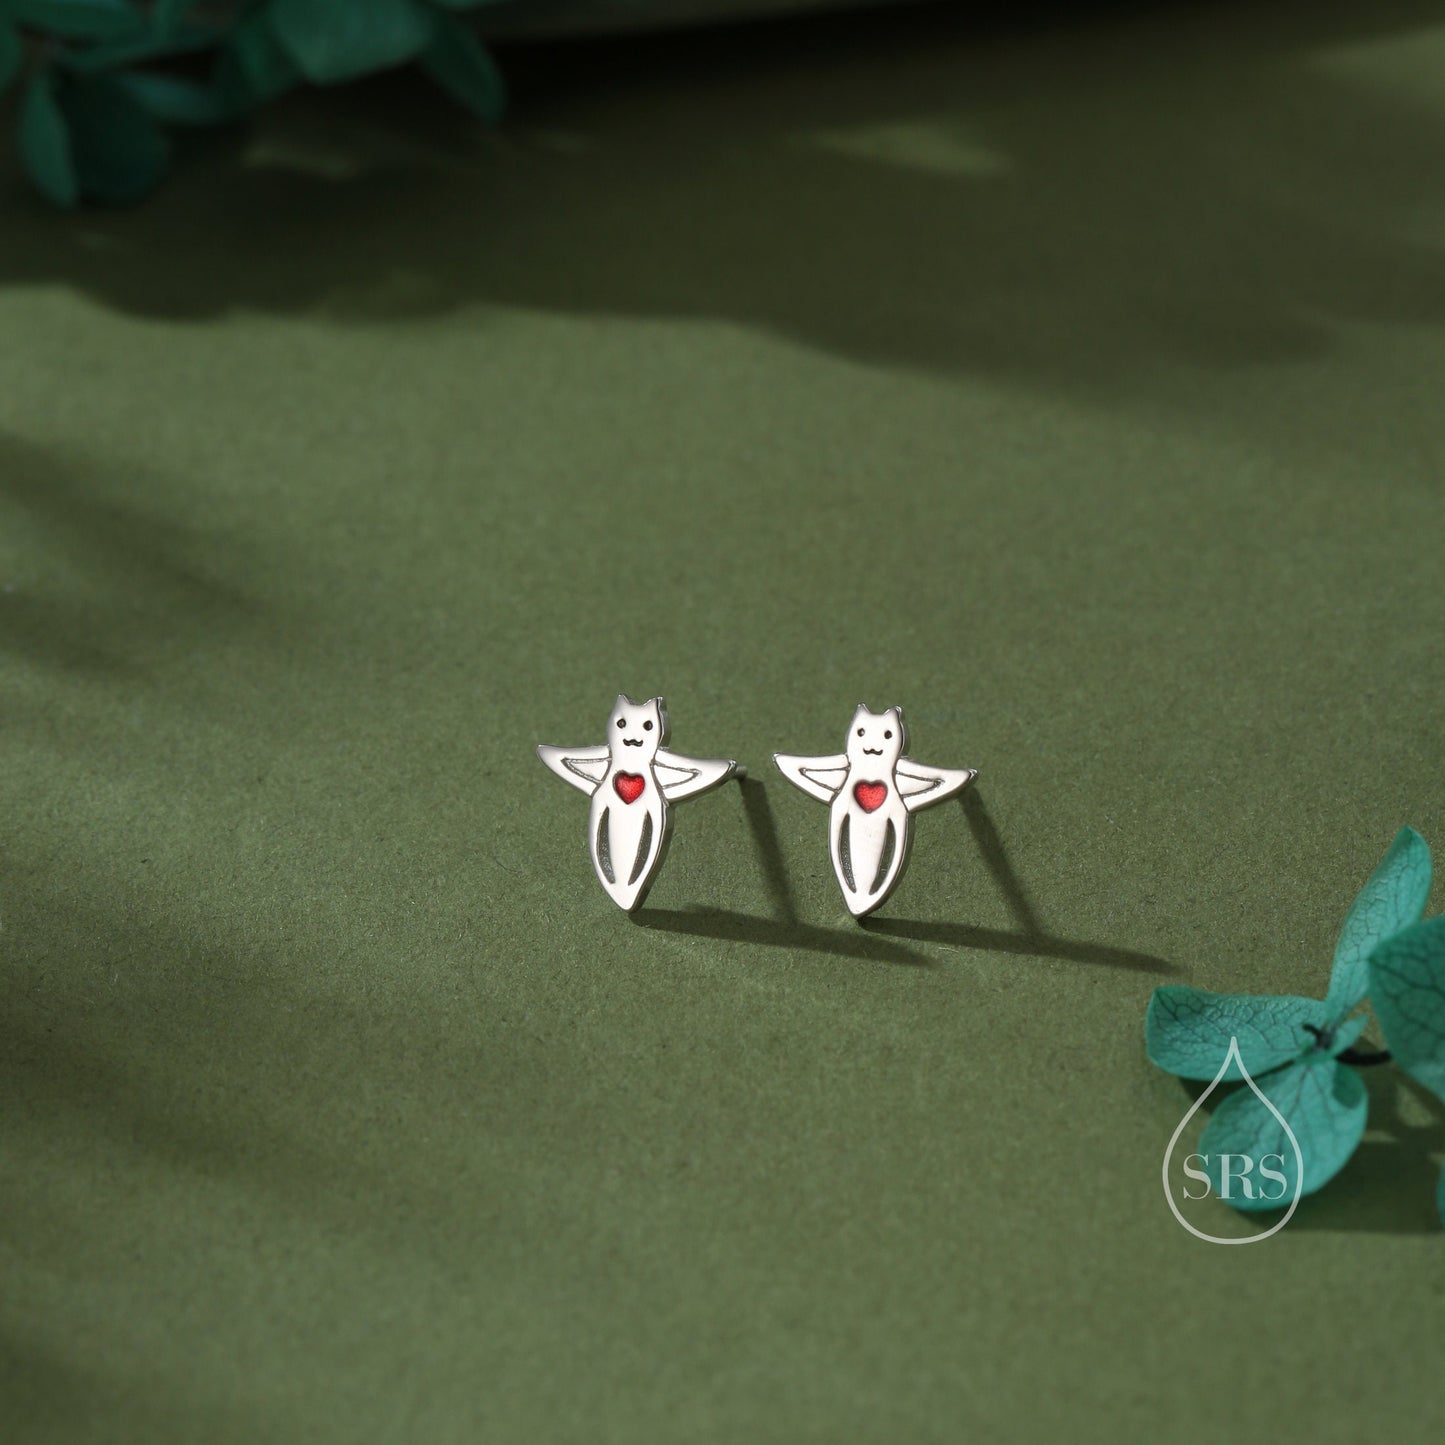 Sea Angel Stud Earrings in Sterling Silver, Silver or Gold, Tiny Sea Angel Earrings, Ocean Themed Fish Earrings